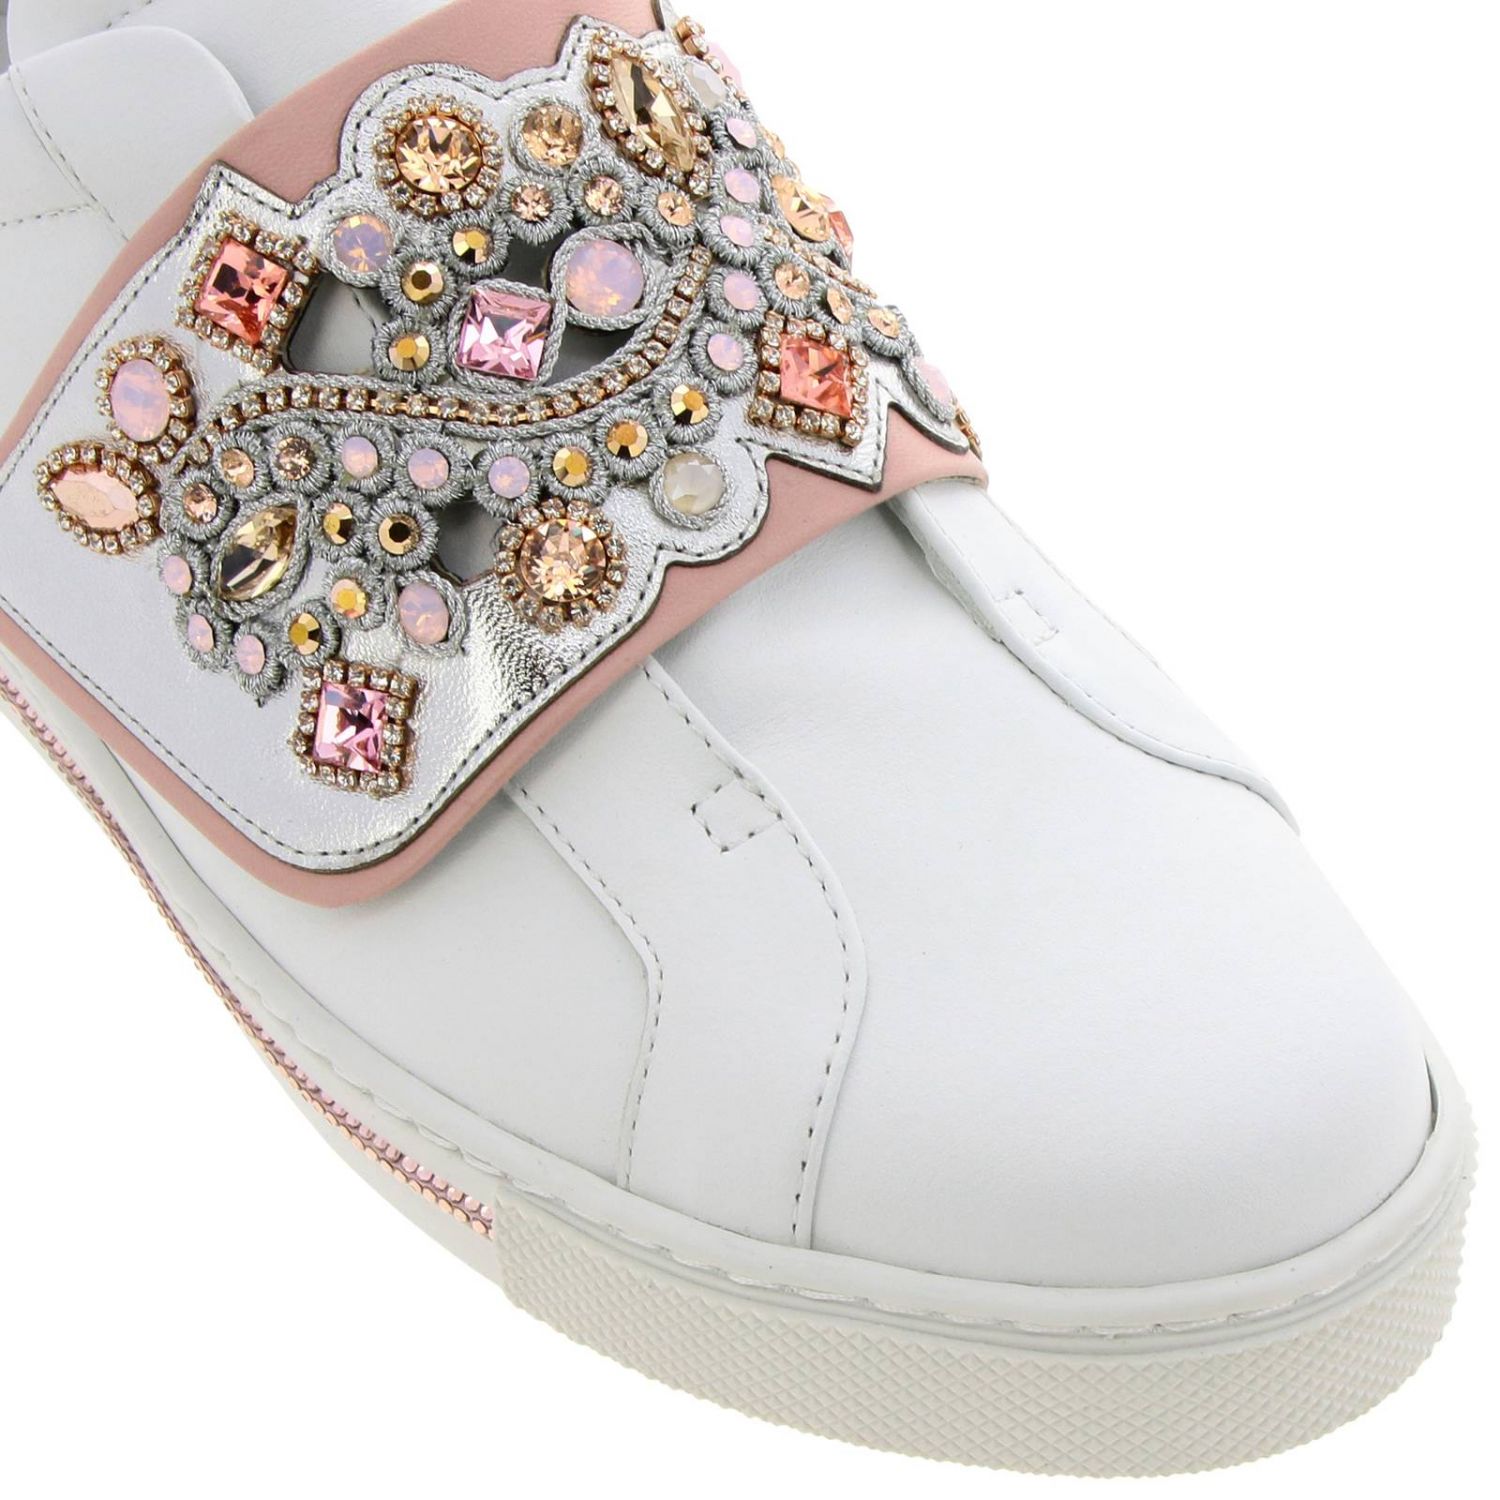 Shoes women Rene Caovilla | Sneakers Rene Caovilla Women White ...